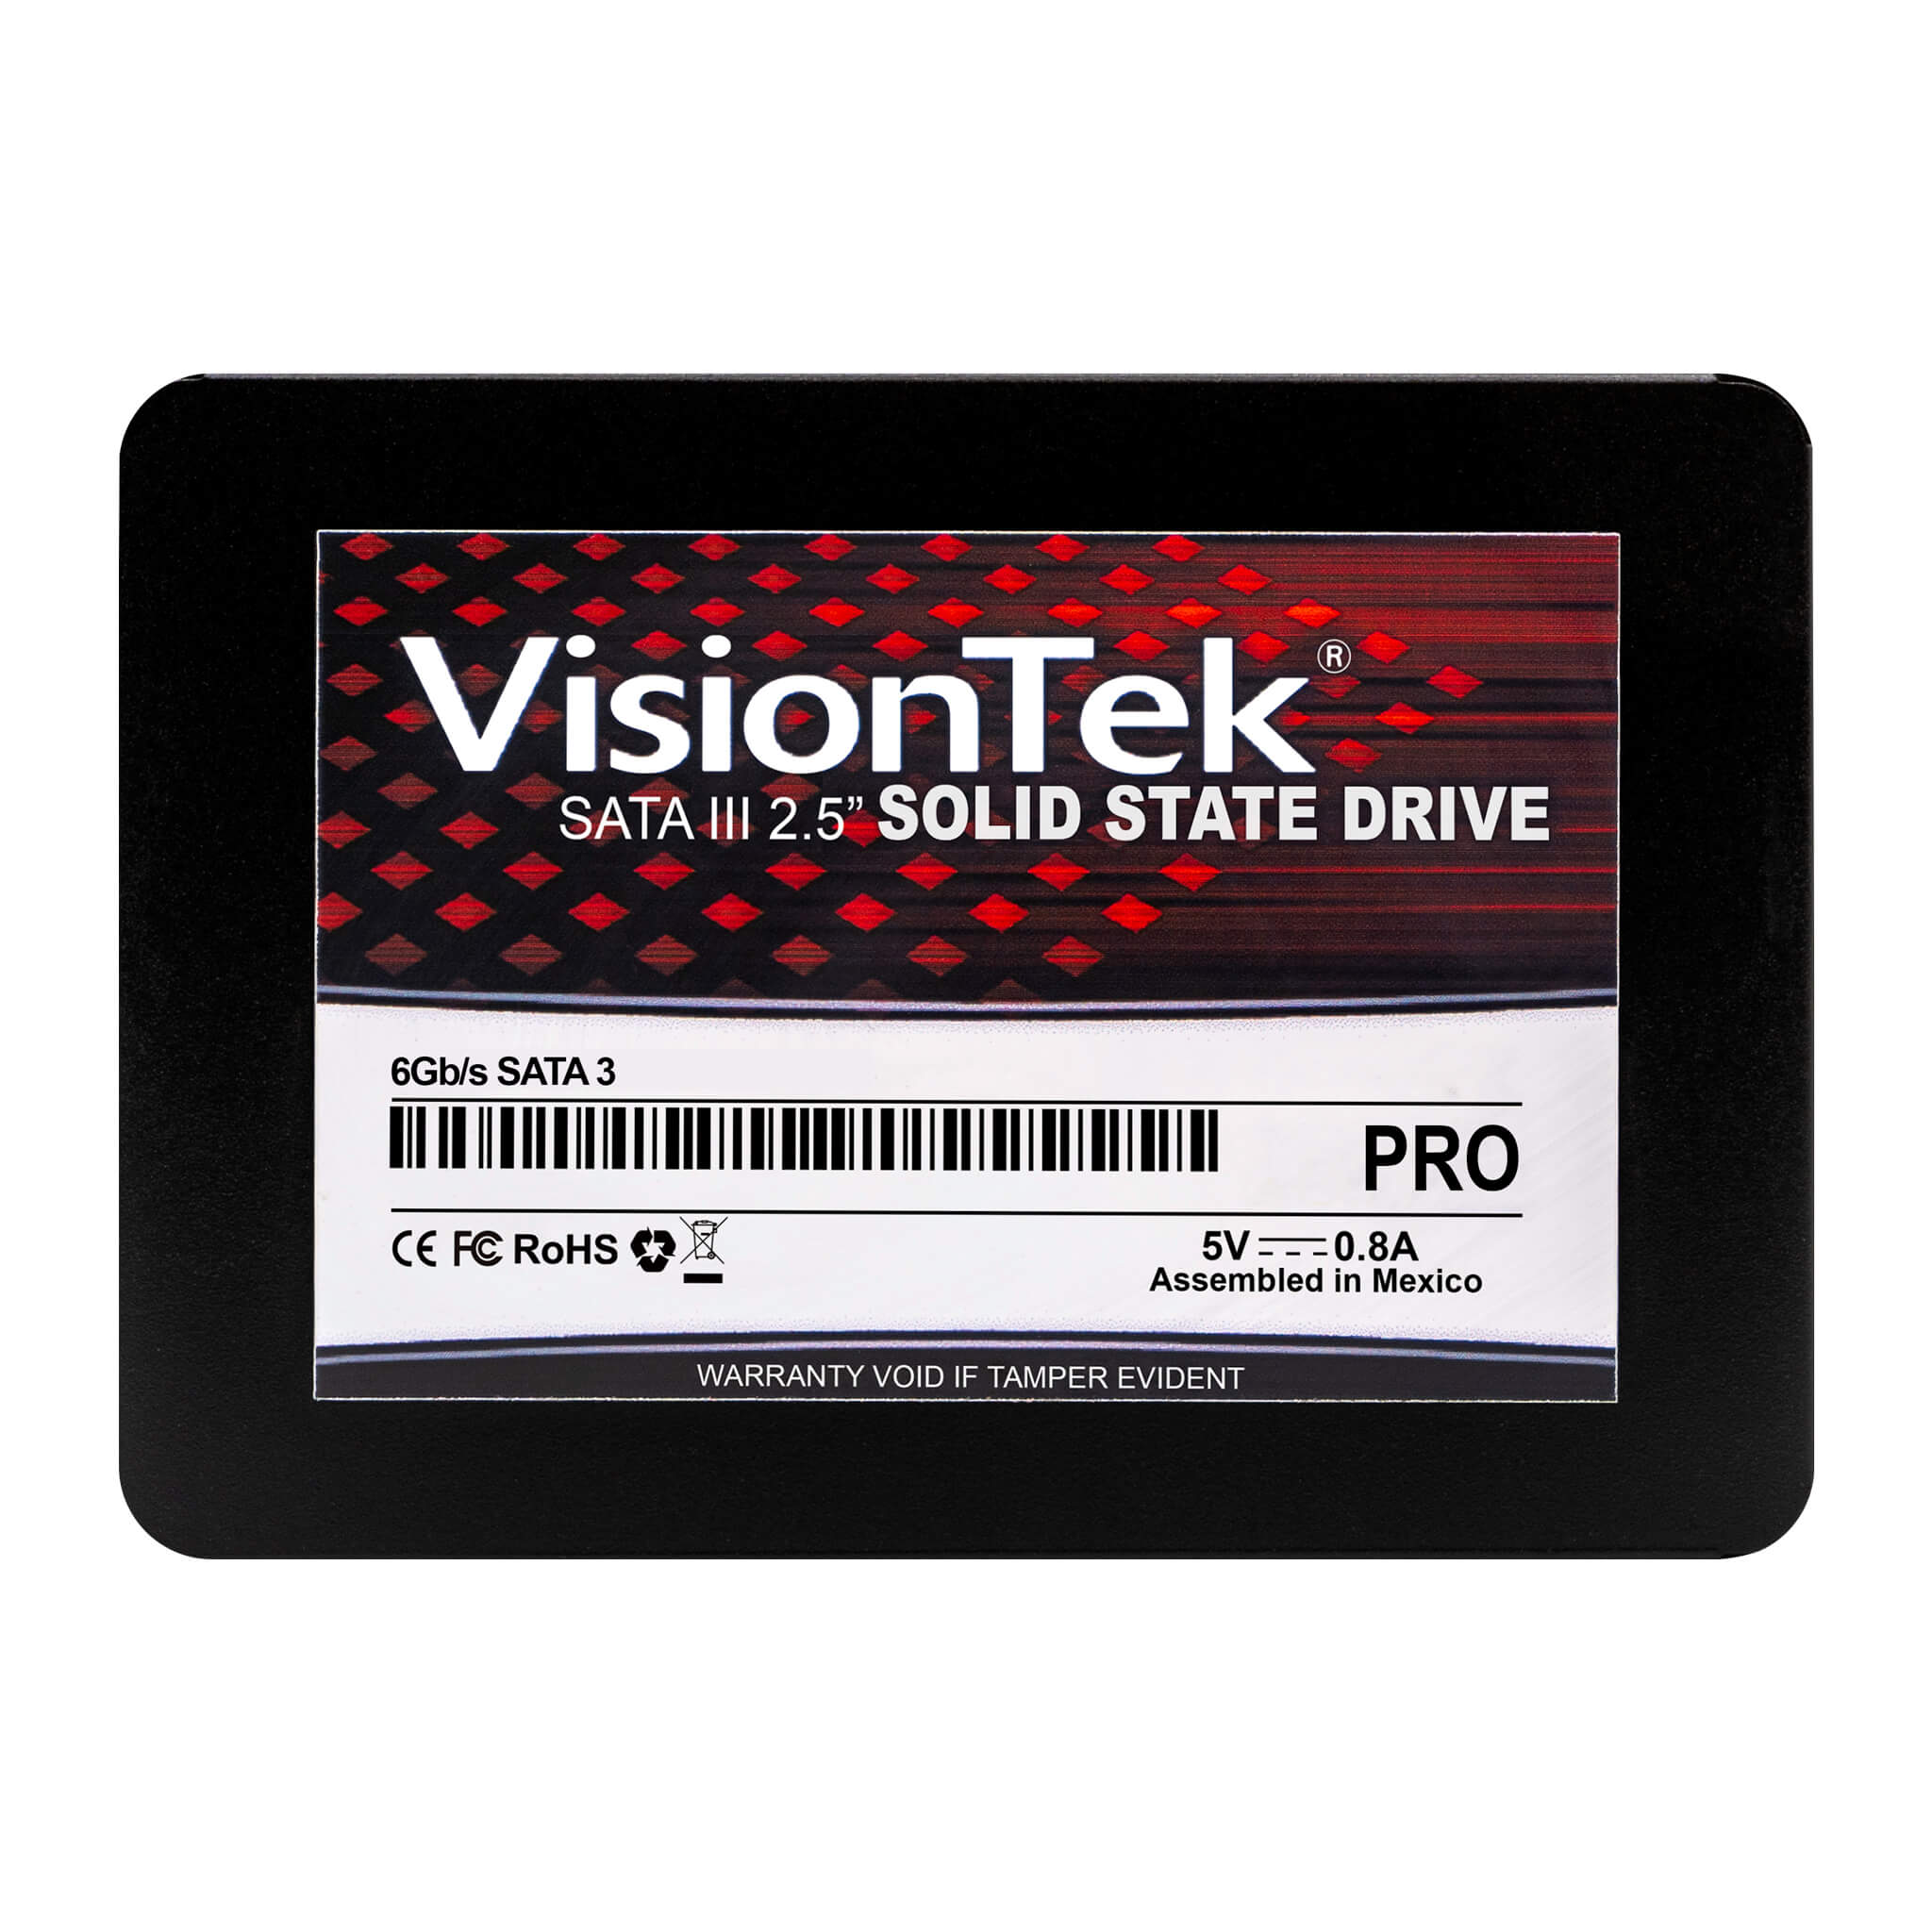 VisionTek Pro 7mm 2.5